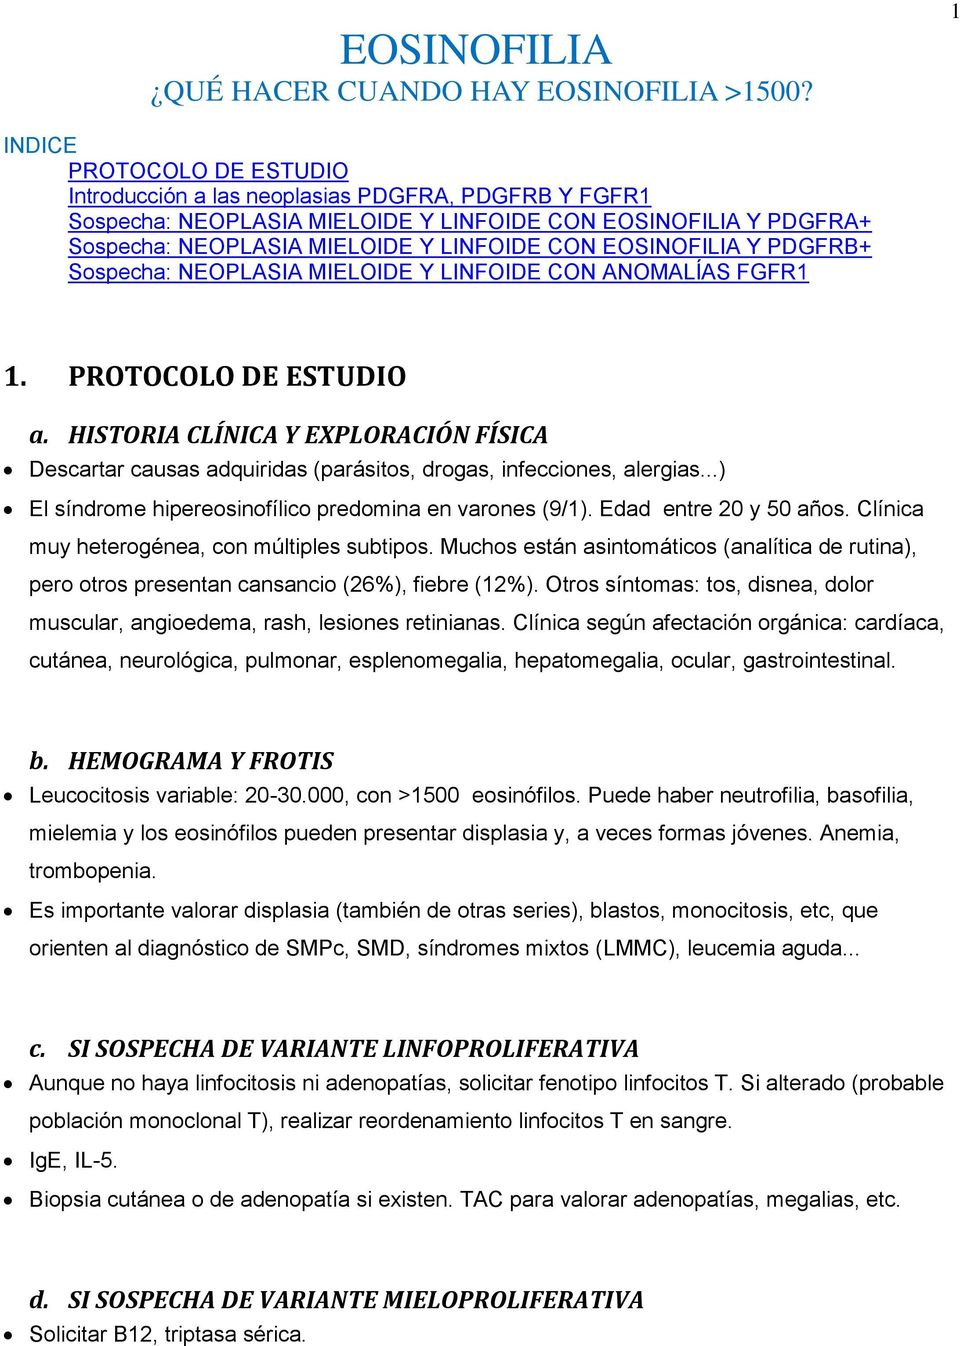 EOSINOFILIA Y PDGFRB+ Sospecha: NEOPLASIA MIELOIDE Y LINFOIDE CON ANOMALÍAS FGFR1 1. PROTOCOLO DE ESTUDIO a.